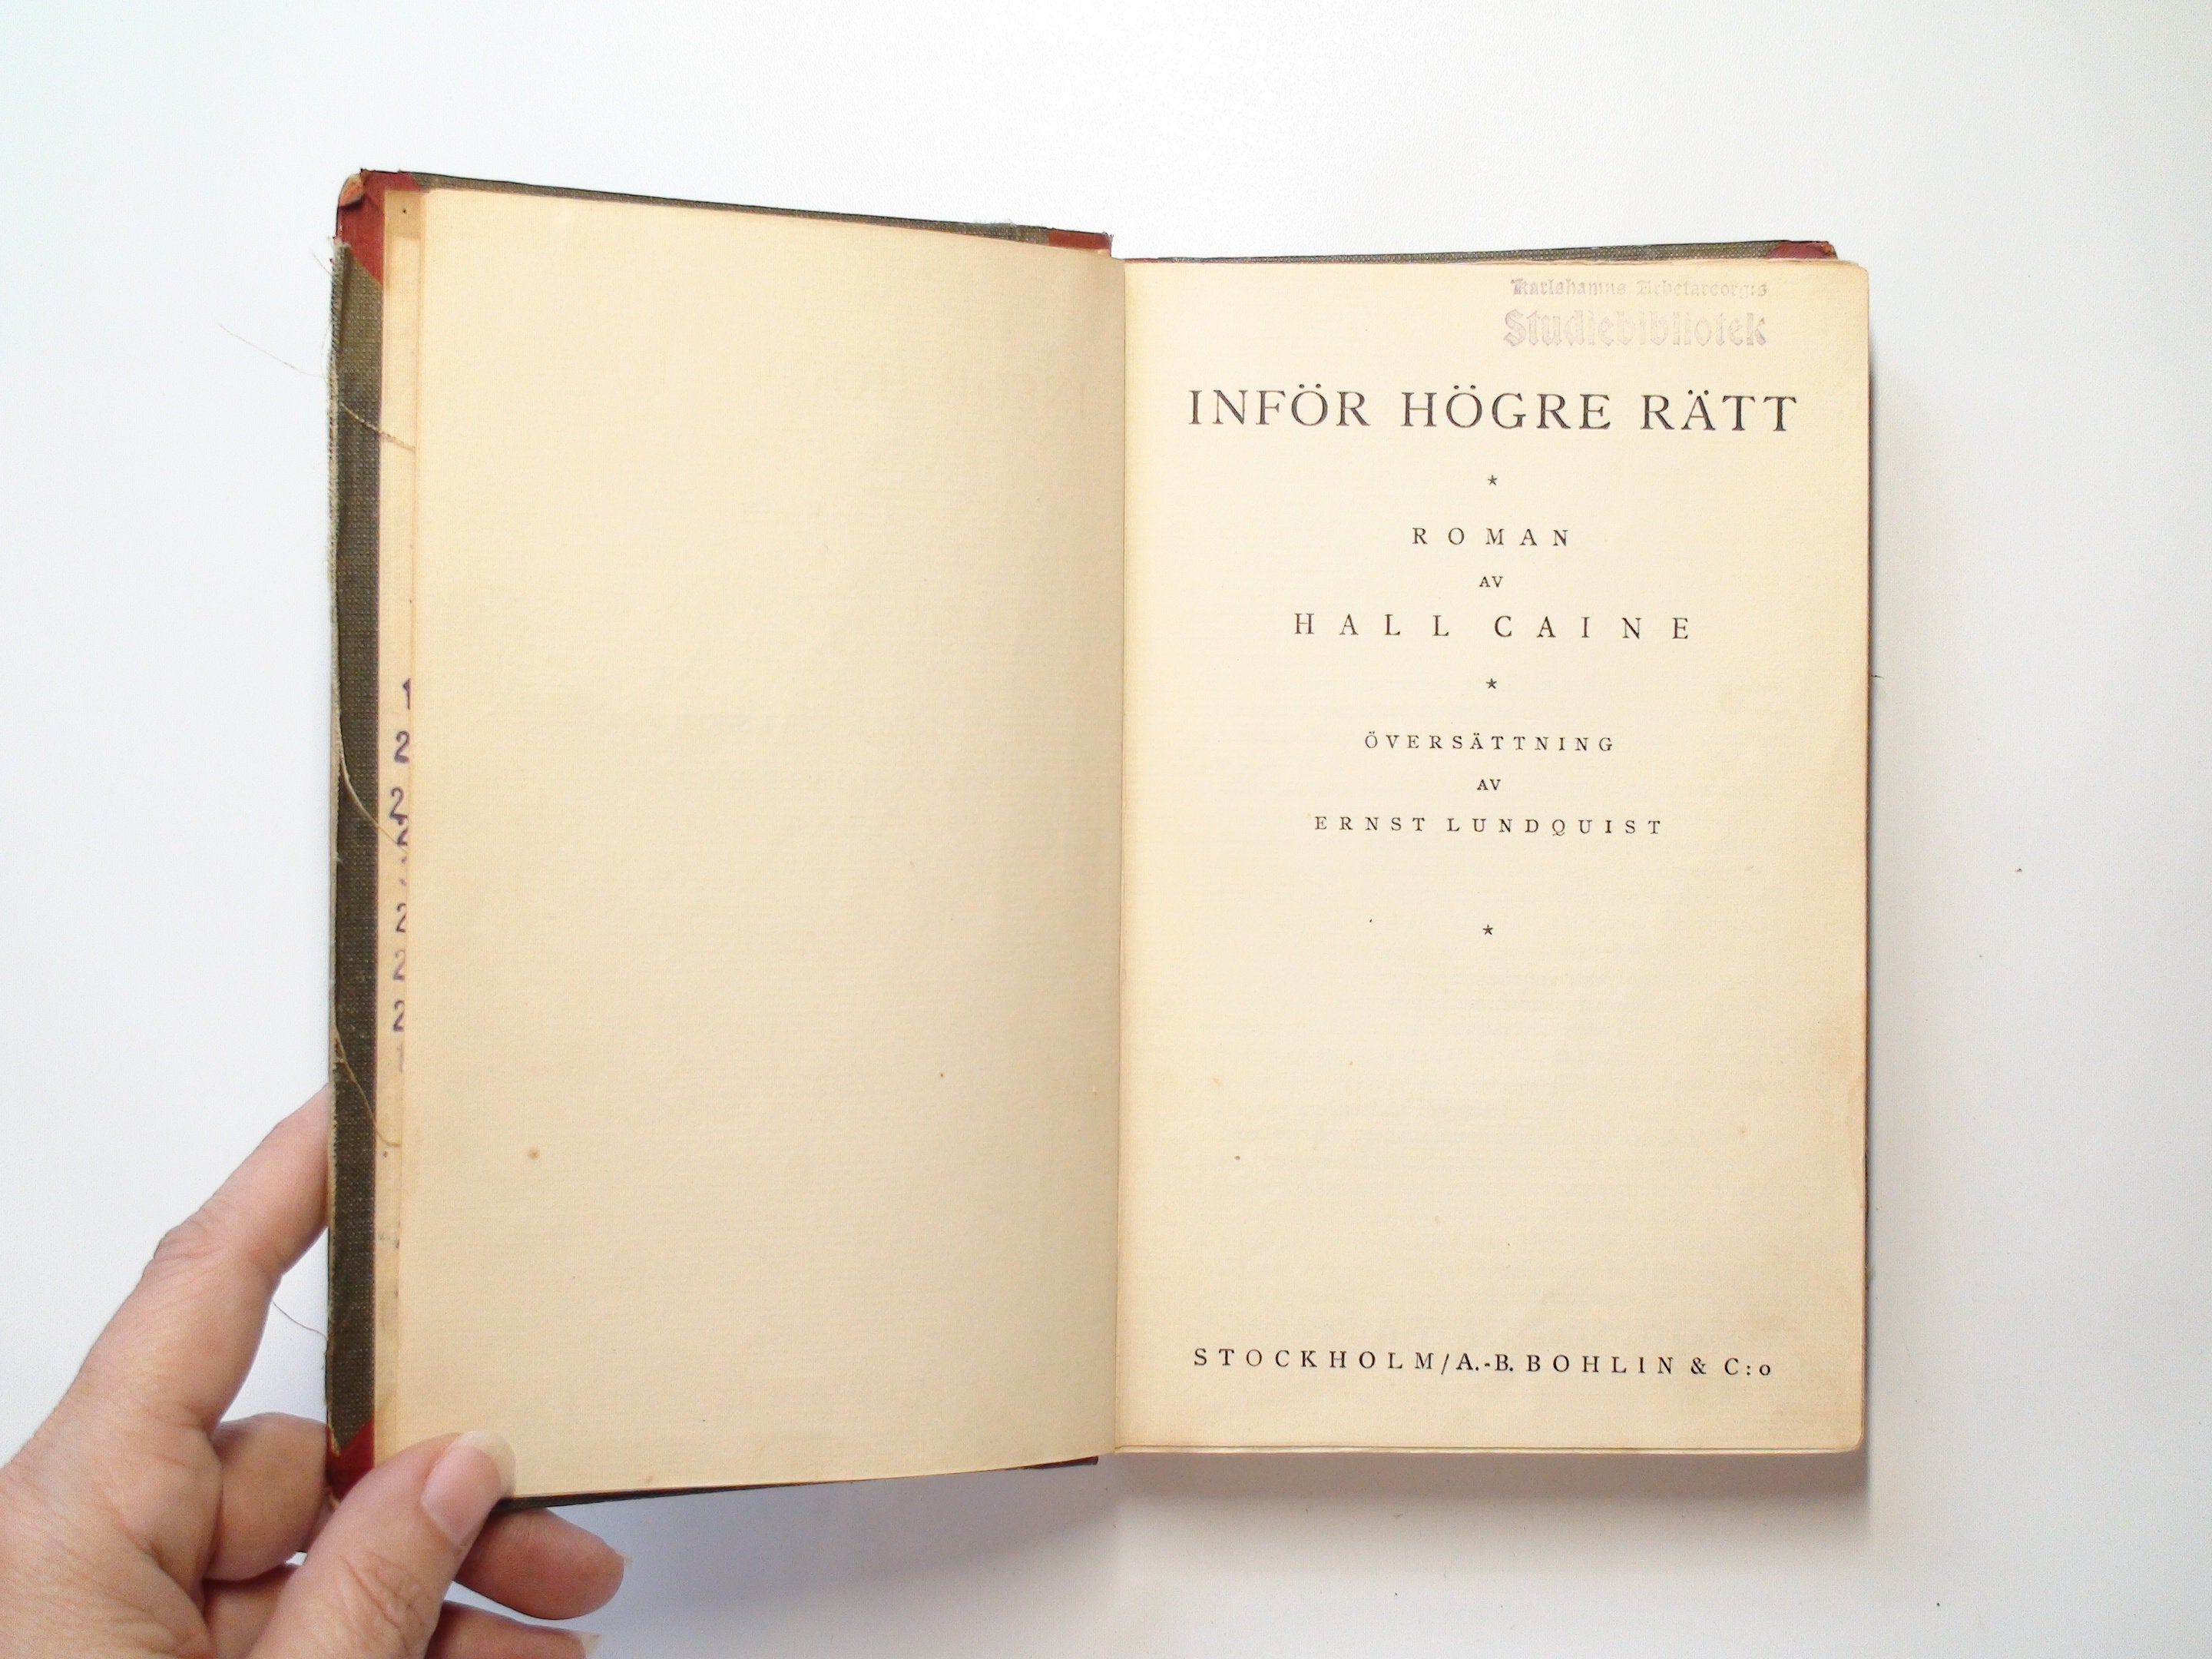 Inför Högre Rätt, Vol I ONLY, Caine Hall, Swedish Language, 1921